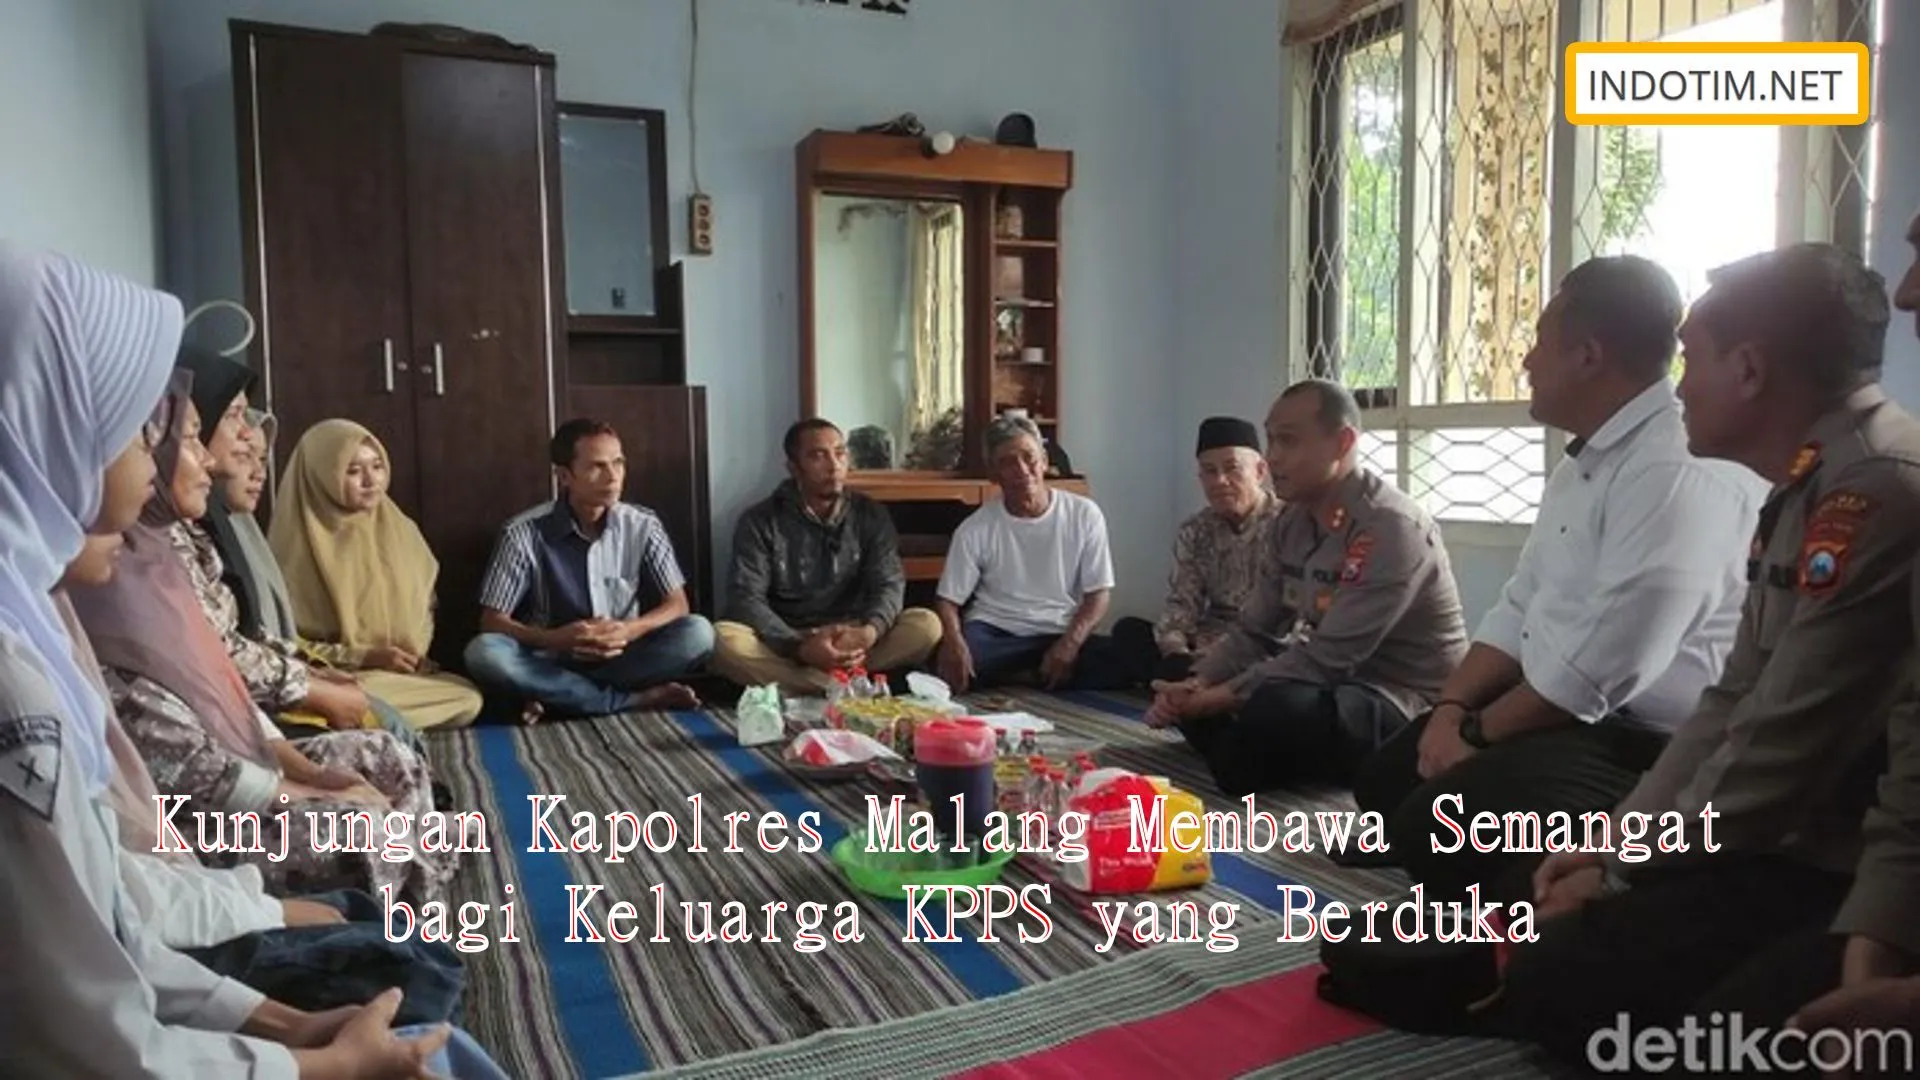 Kunjungan Kapolres Malang Membawa Semangat bagi Keluarga KPPS yang Berduka